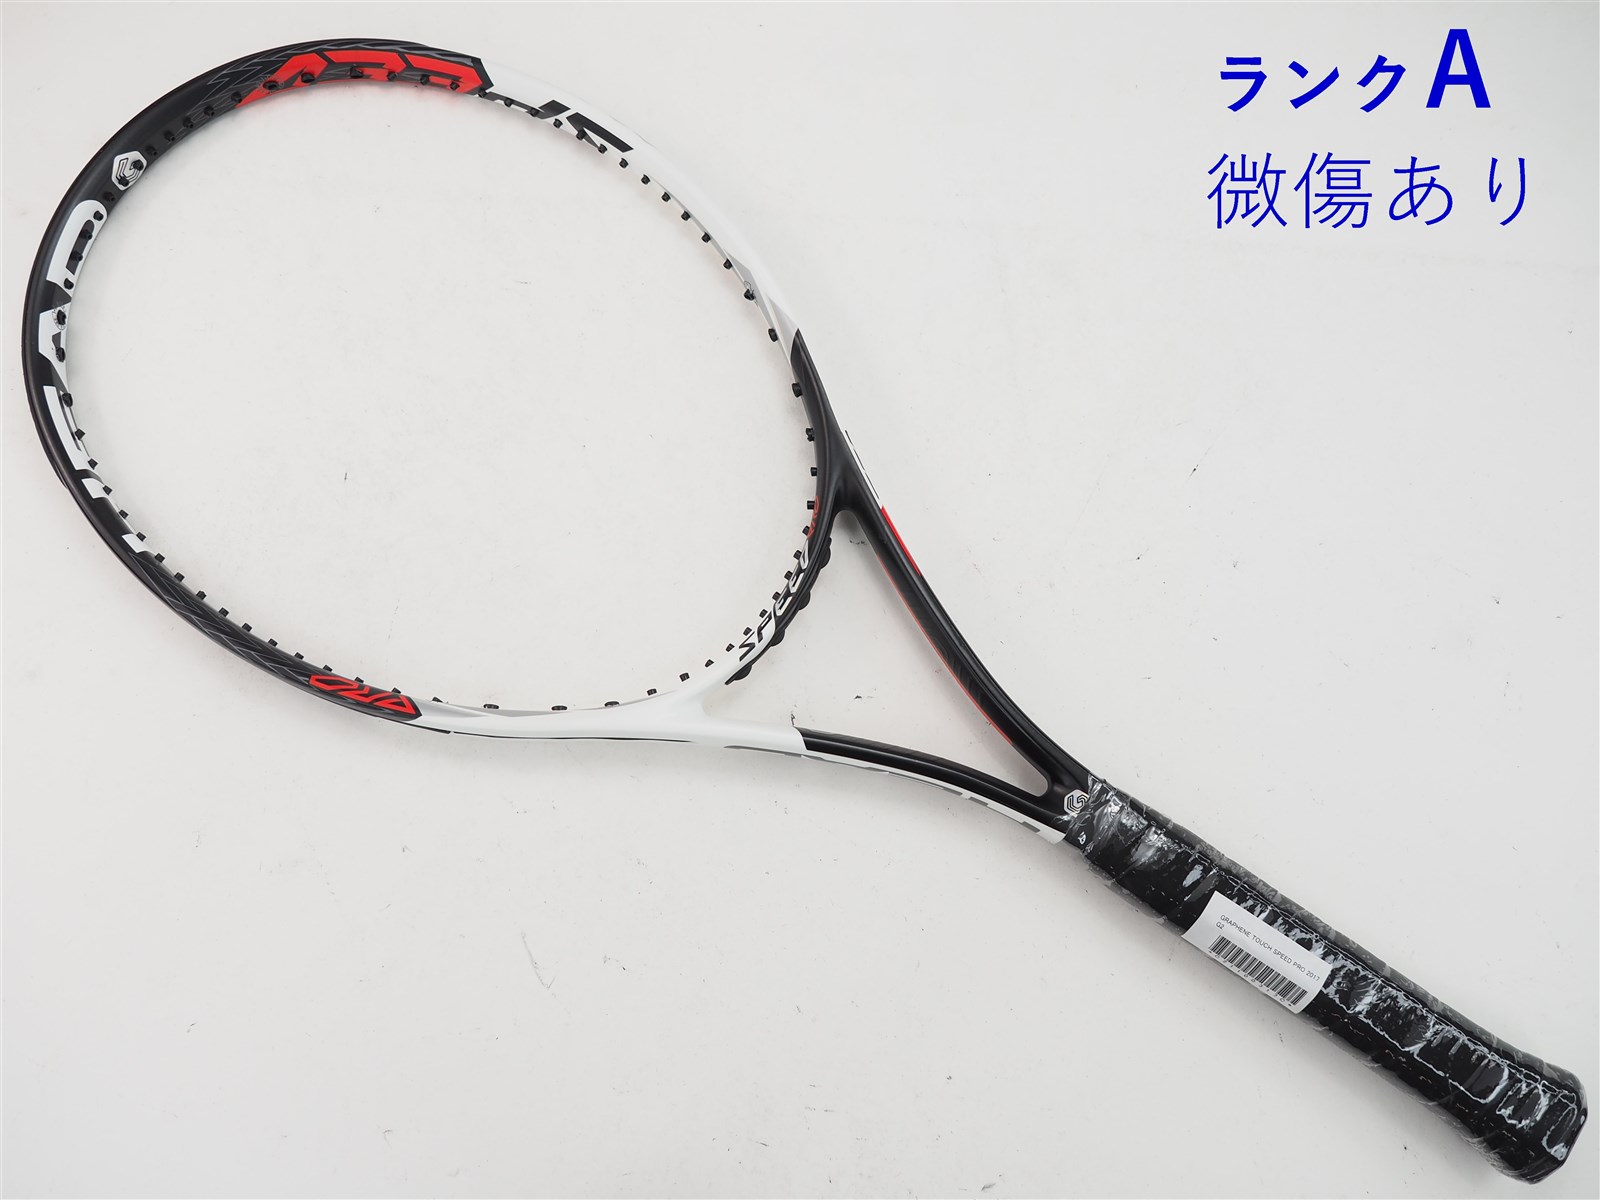 テニスラケット ヘッド グラフィン タッチ インスティンクト ライト 2017年モデル (G1)HEAD GRAPHENE TOUCH INSTINCT LITE 2017272インチフレーム厚